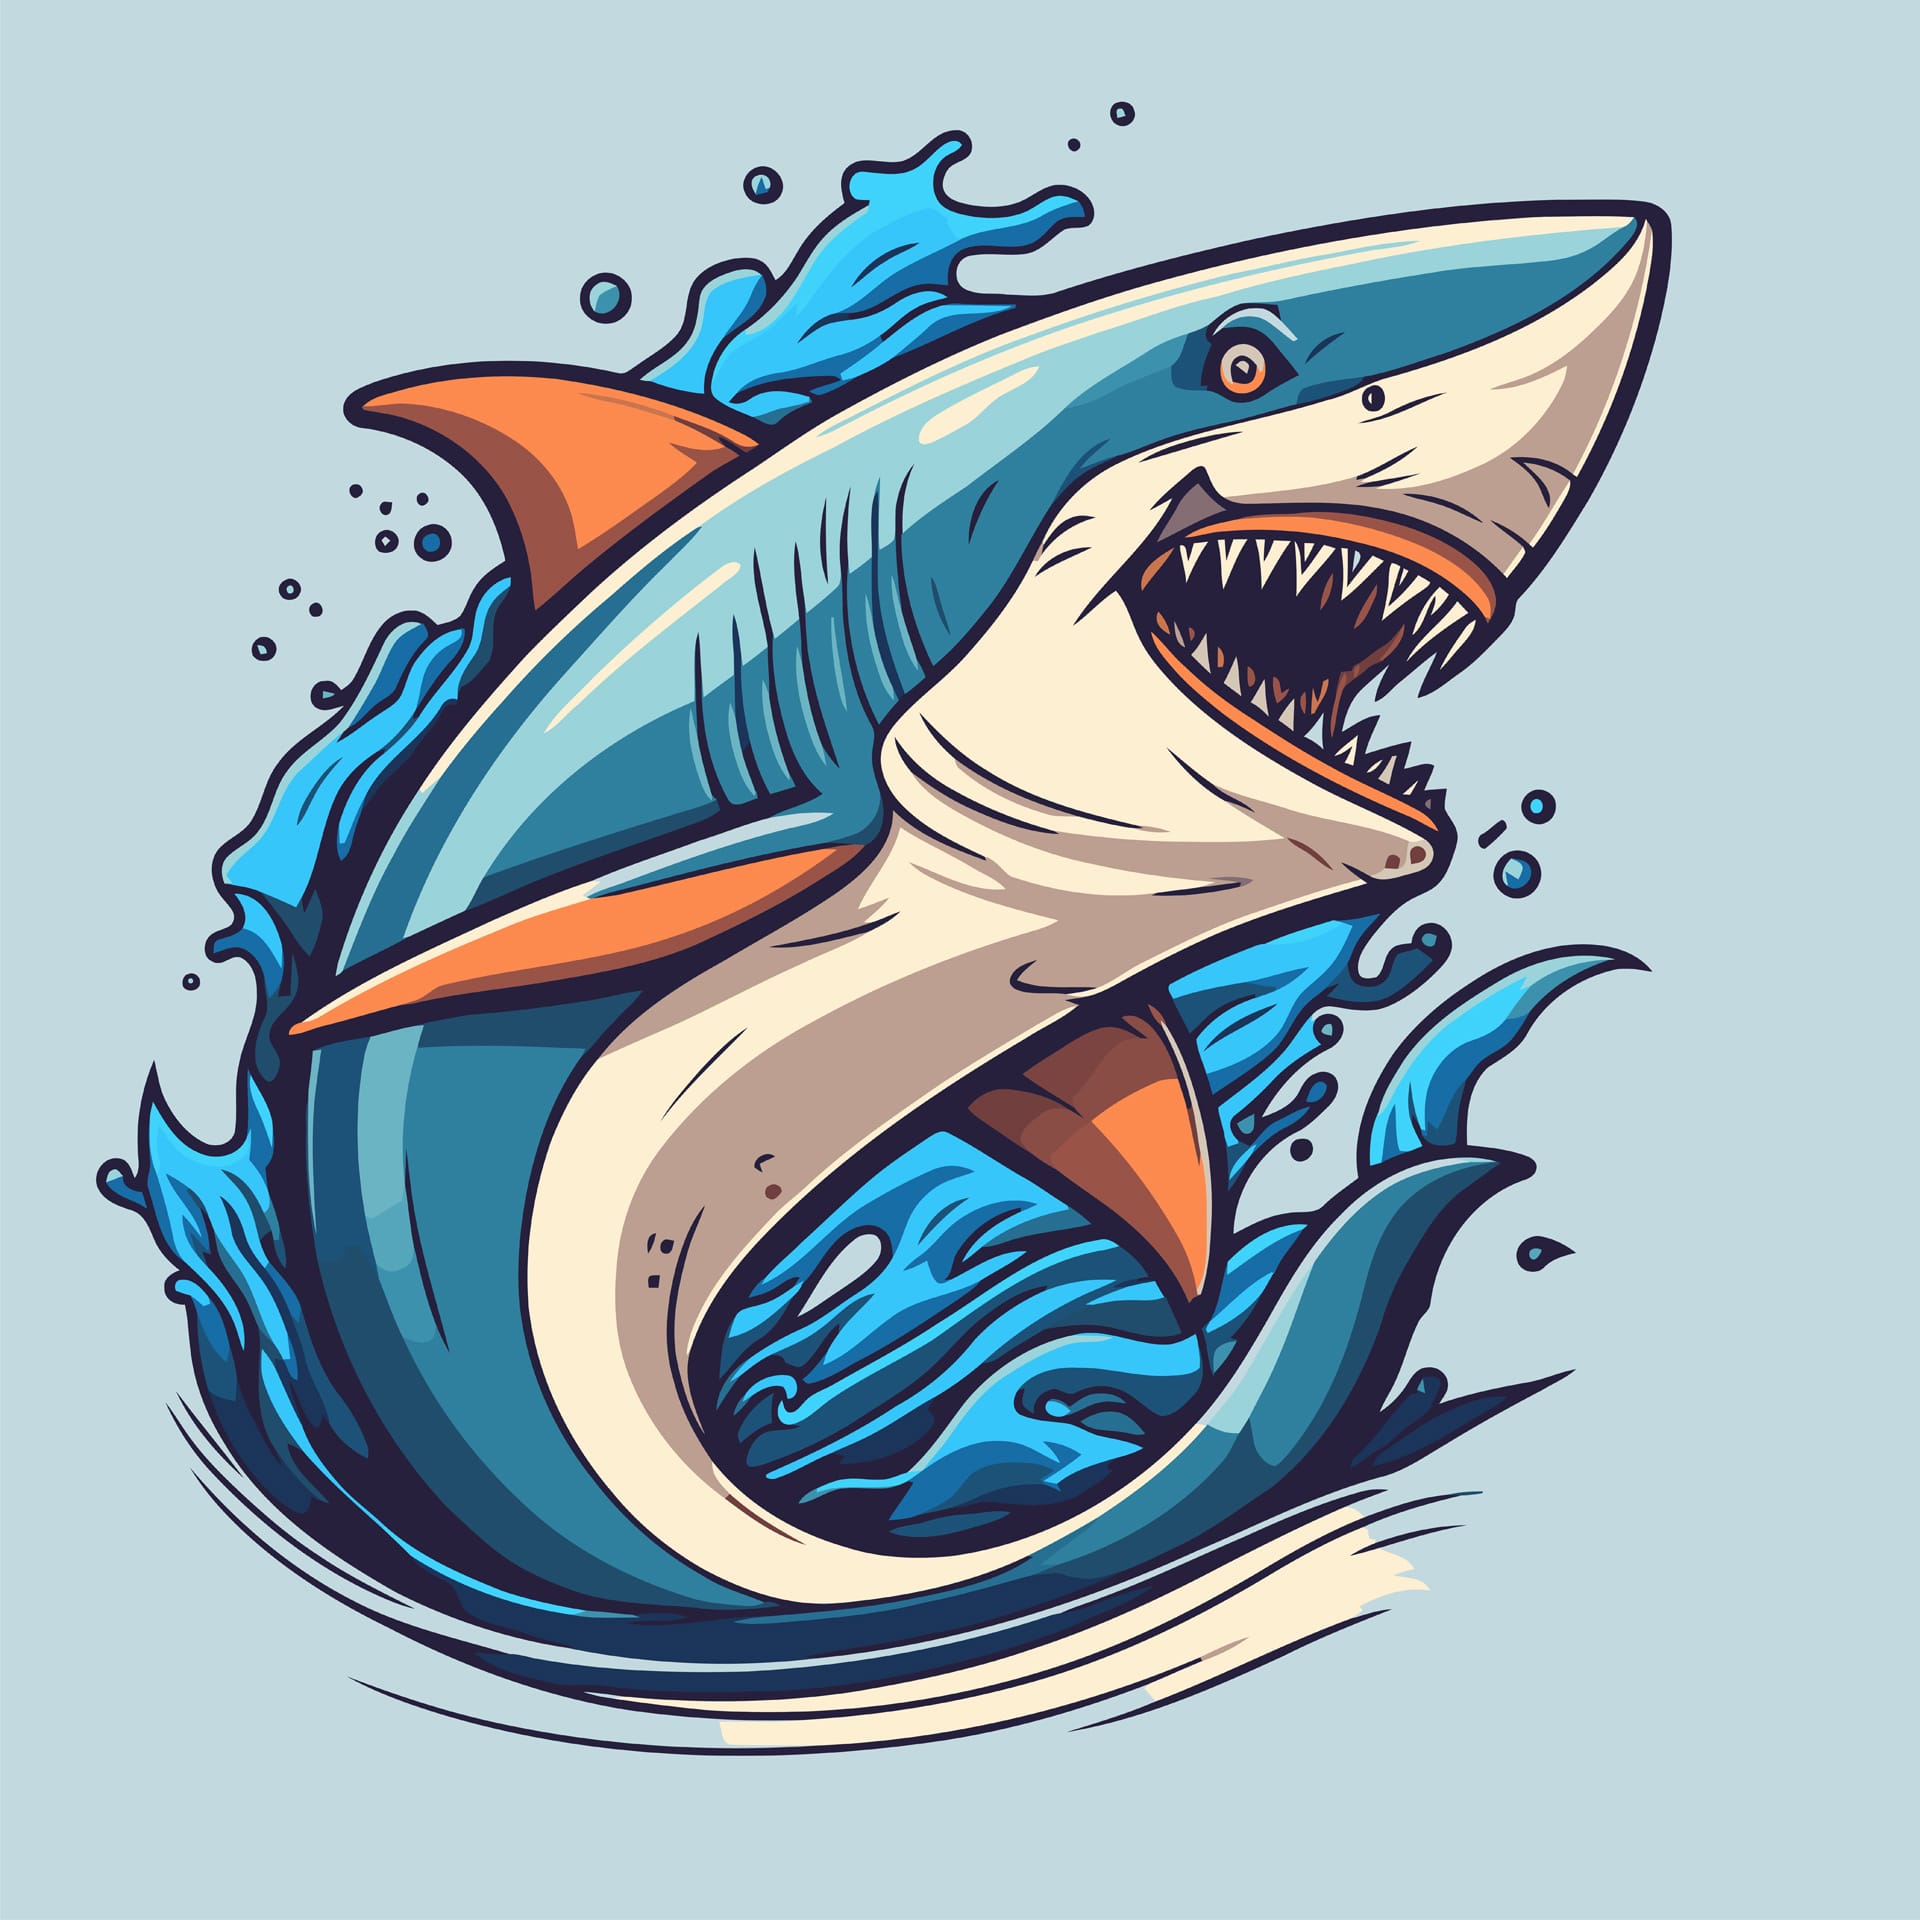 Angry blue shark logo character mascot icon funny cartoon